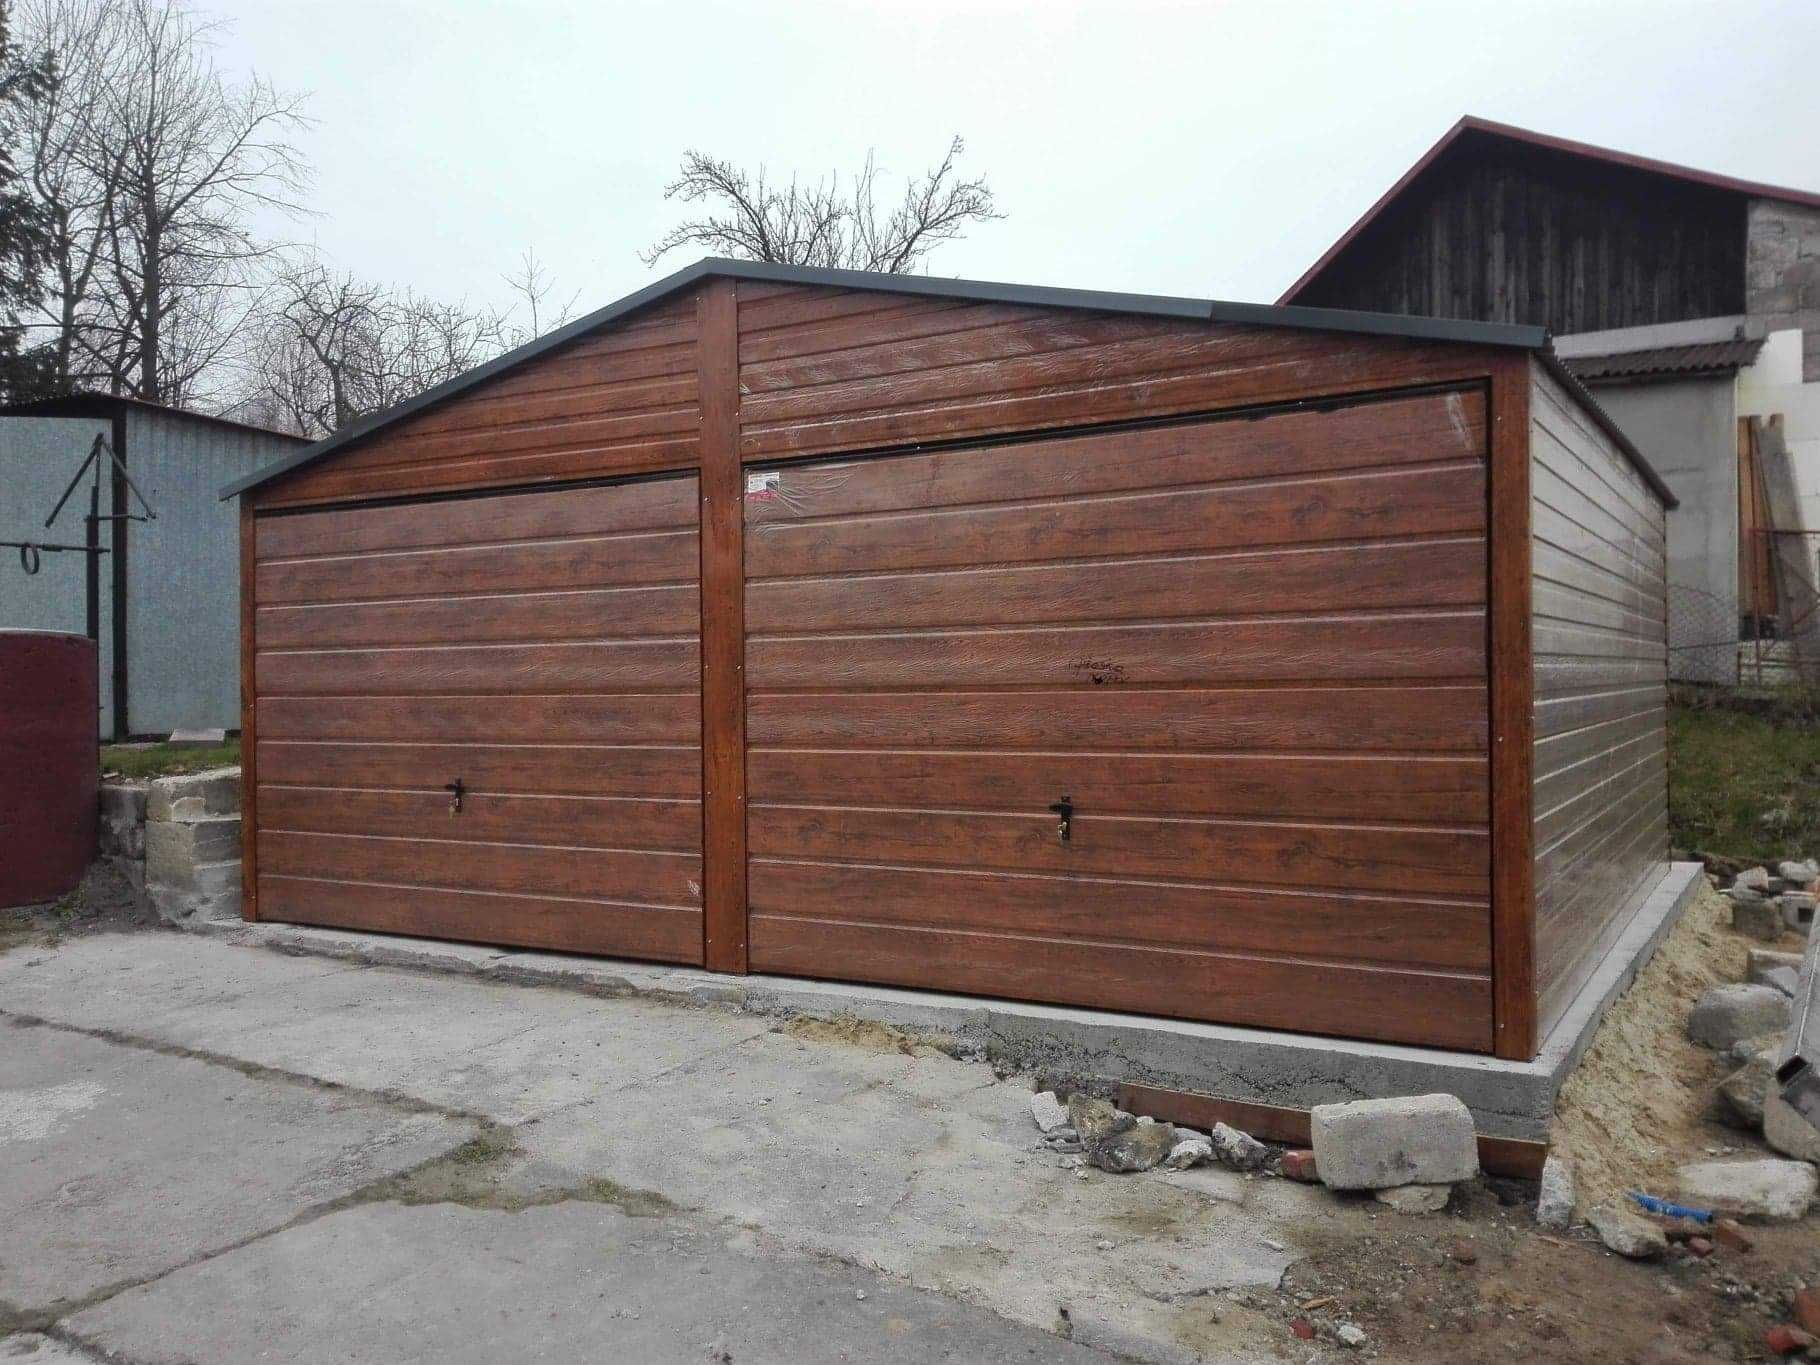 Garaże blaszane drewnopodobne, nowoczesny garaż, 6x5,6x6,4x6,3x5,3x6